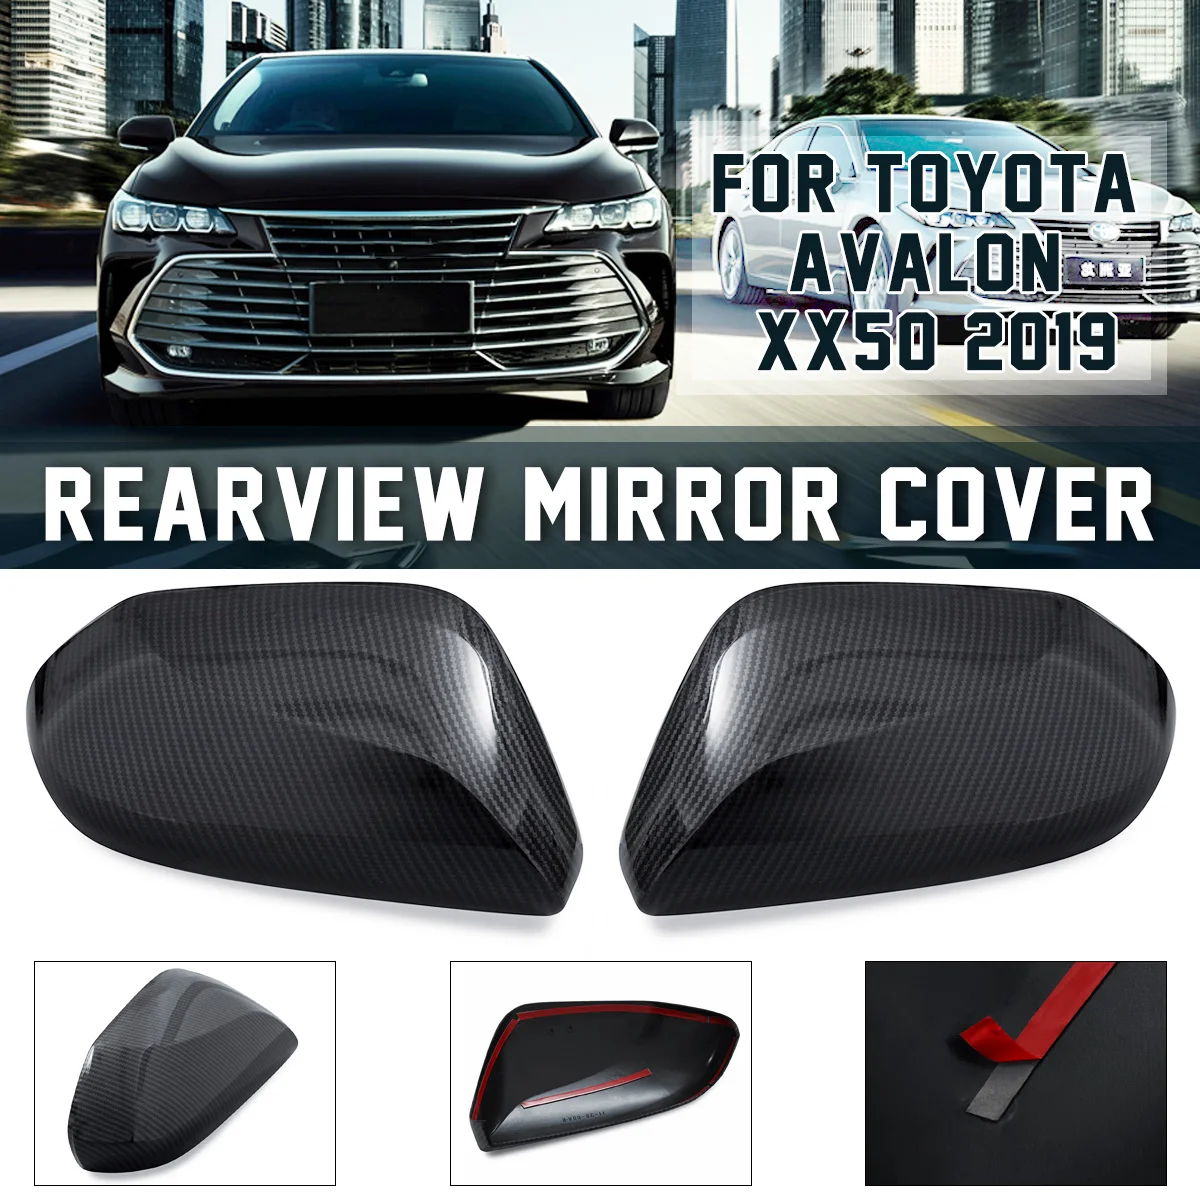 2x ABS Автомобильная Боковая дверь зеркало заднего вида крышка наклейка крышка углеродного волокна для Toyota Avalon XX50